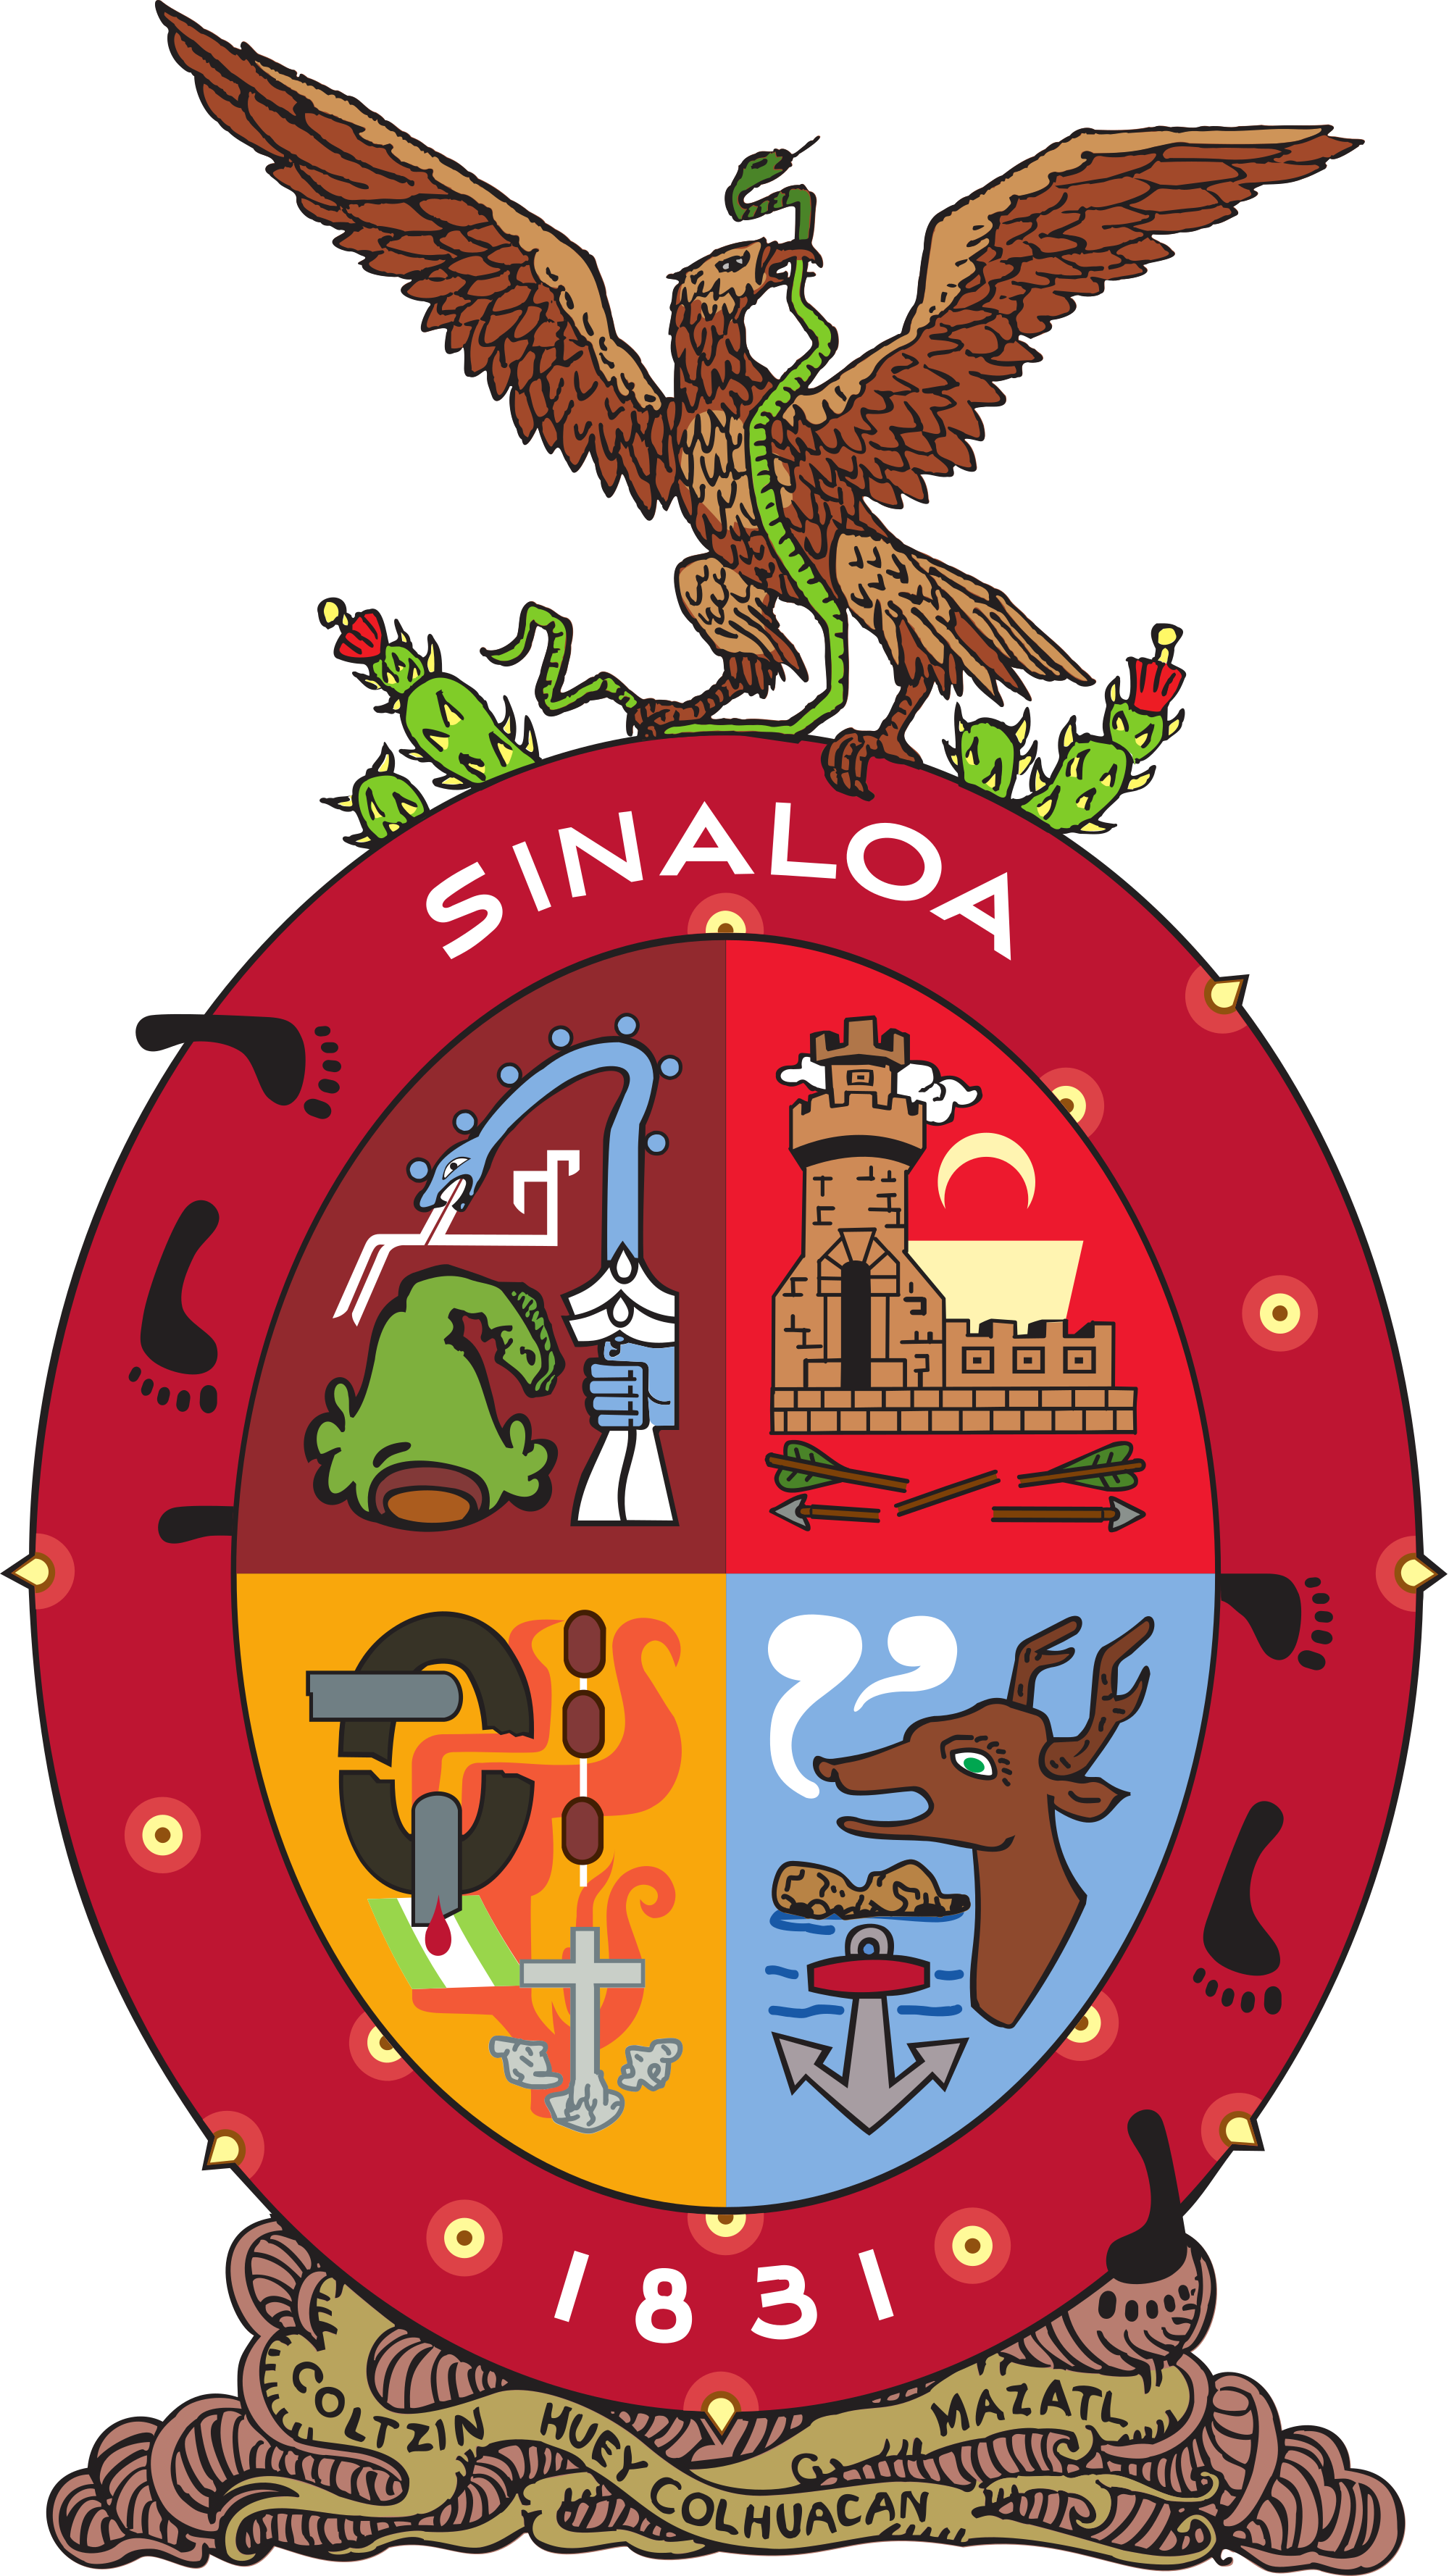 Sinaloa Logos